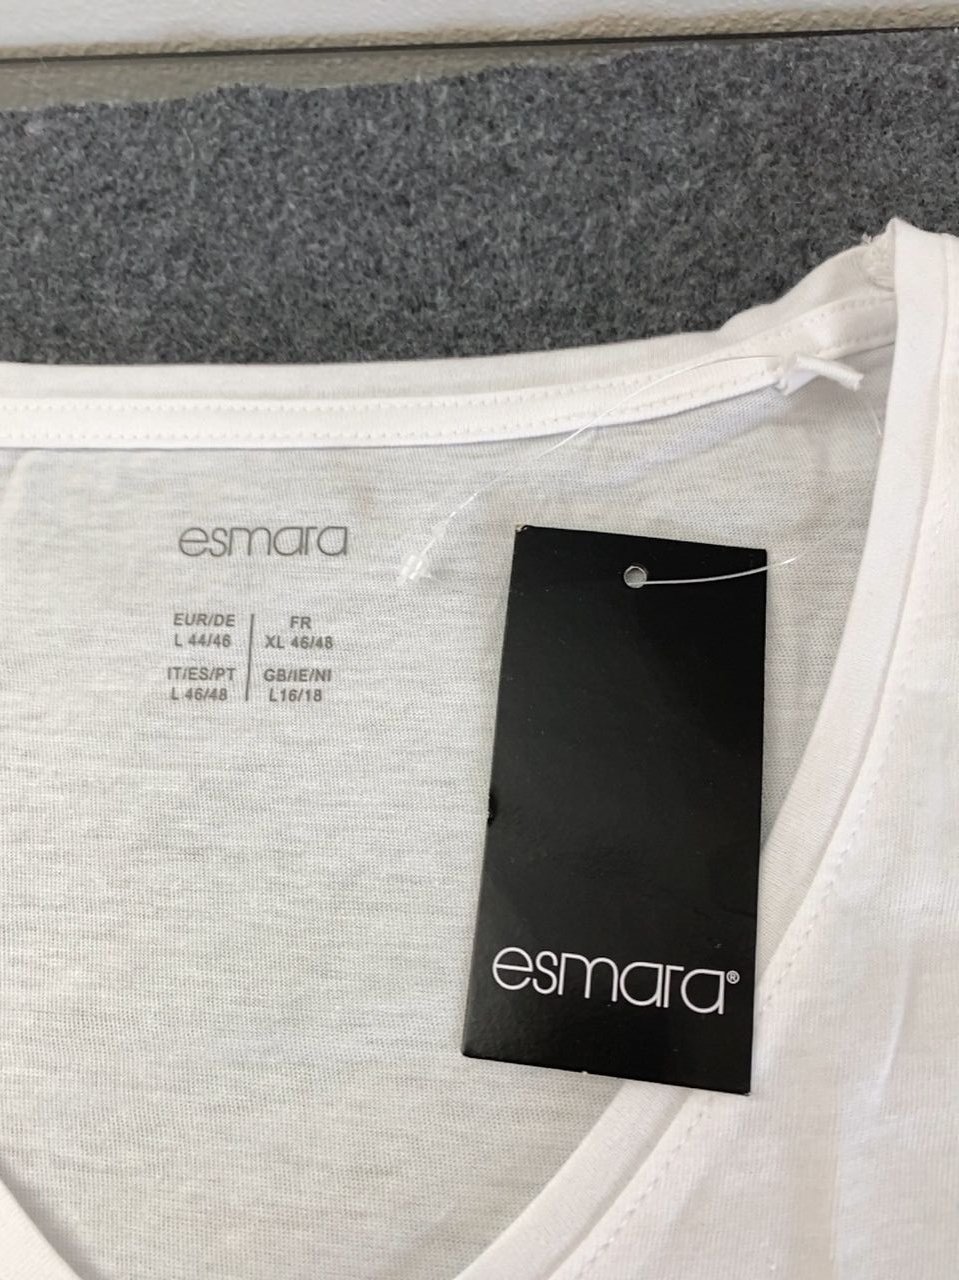 Bílé dámské tričko s krátkým rukávem Esmara vel. L